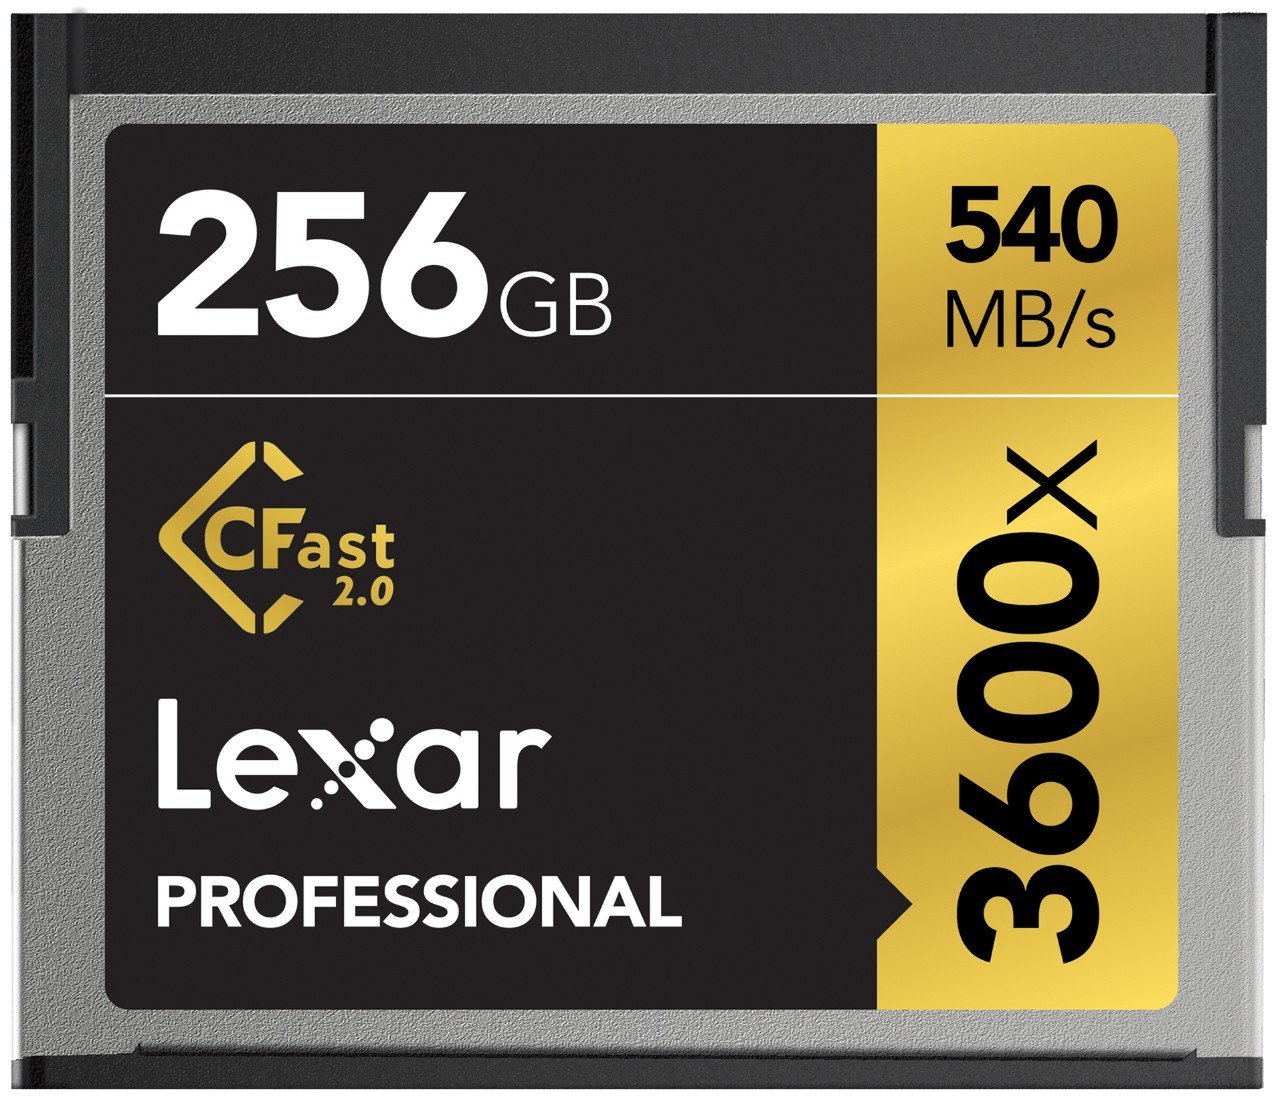 Lexar 256GB Cfast Card for rent.